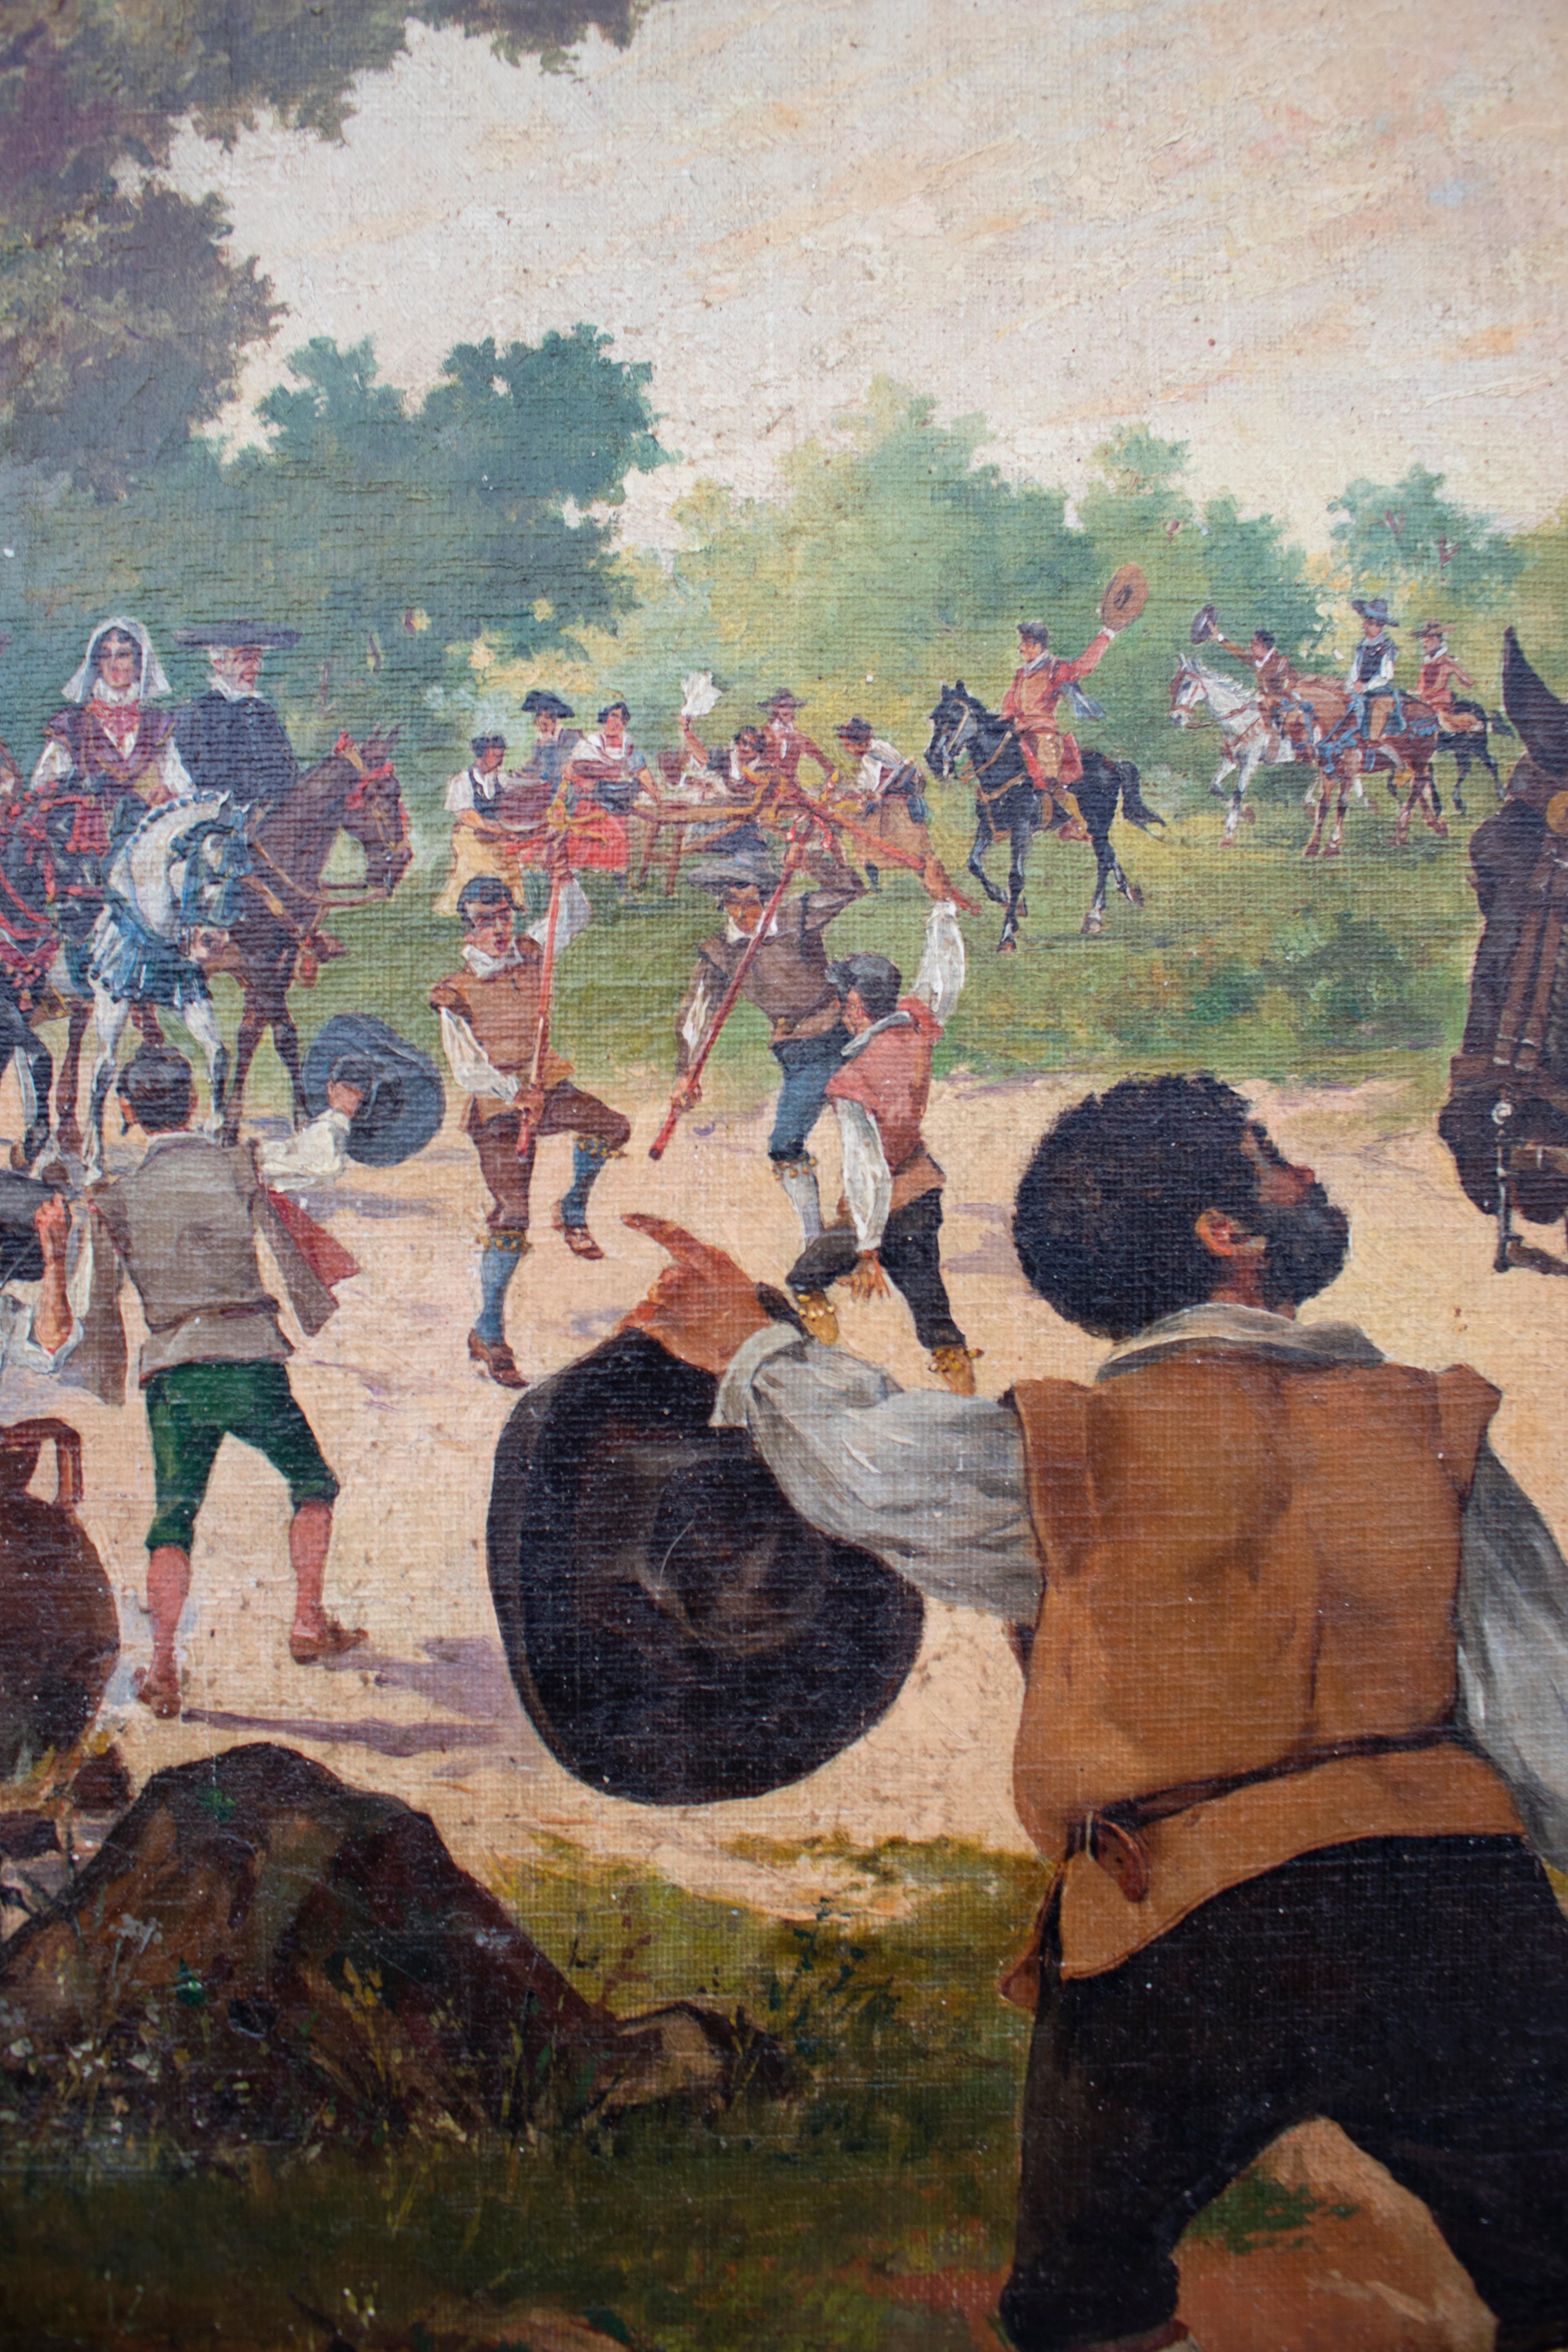 Mariano Obiols Delgado (né vers 1860) paire de peintures à l'huile sur toile représentant des scènes de Don Quichotte. Signé et daté 1907,

Dimensions de chaque tableau : 56 x 74 x 1,5.